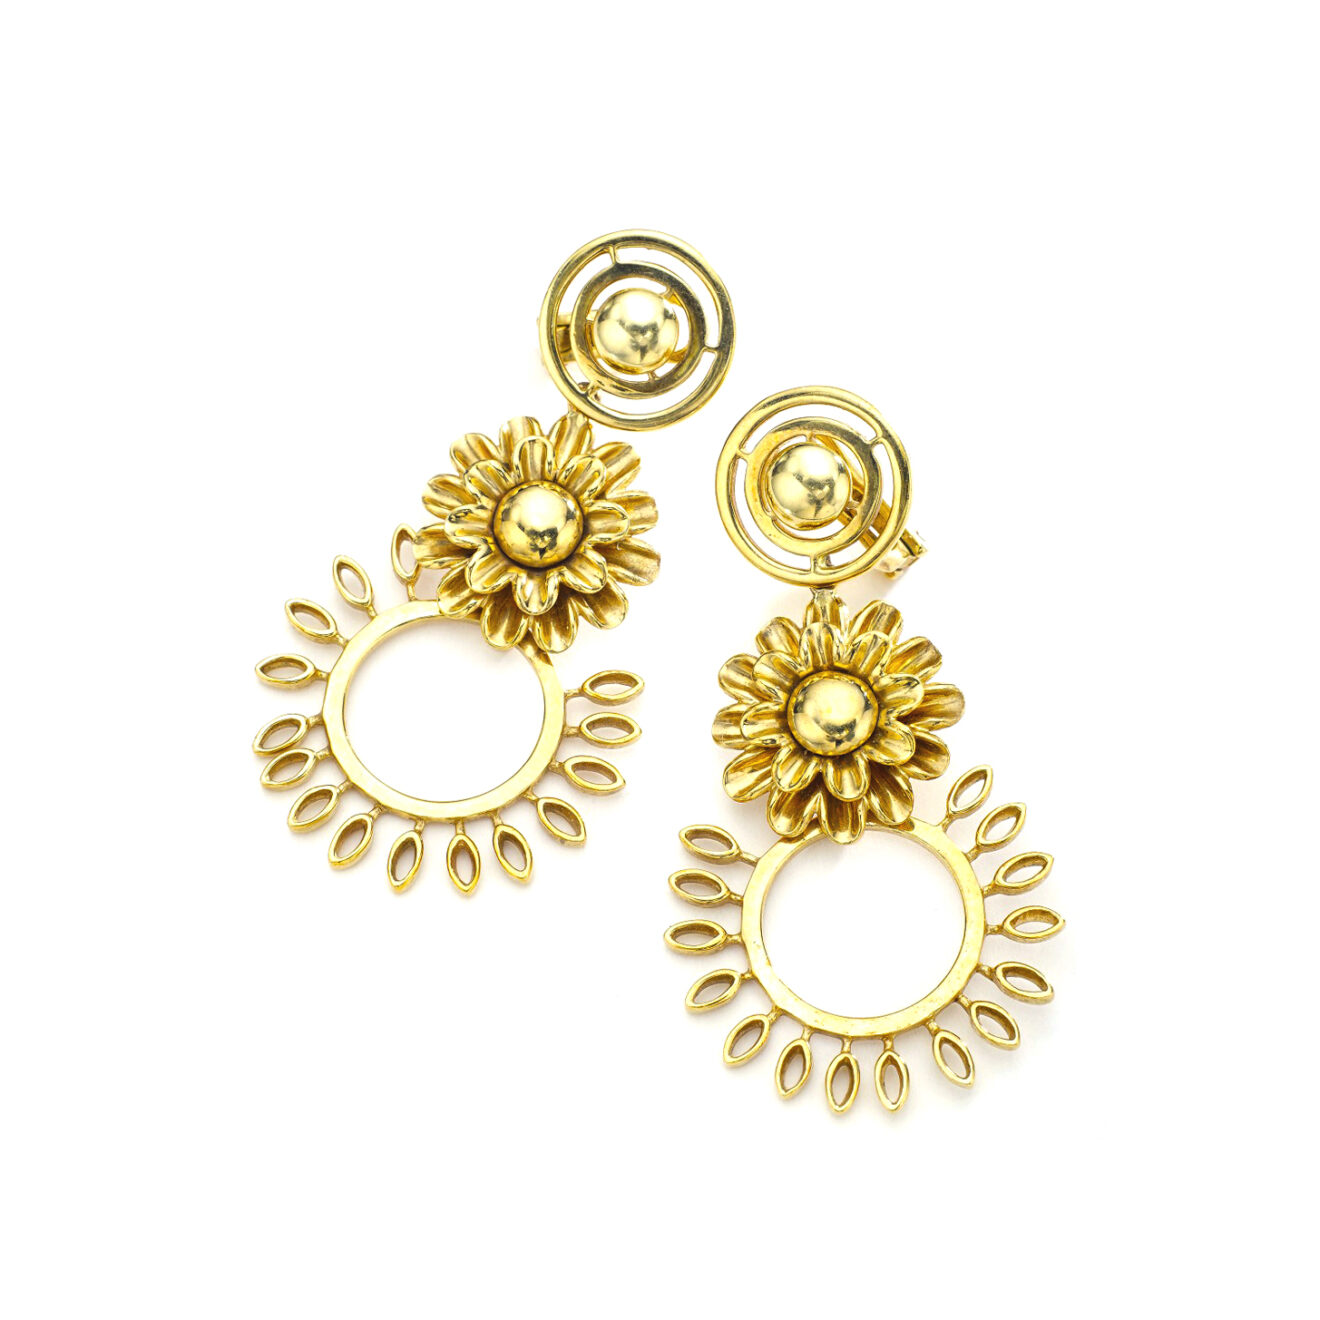 Flower yellow gold pendant earrings